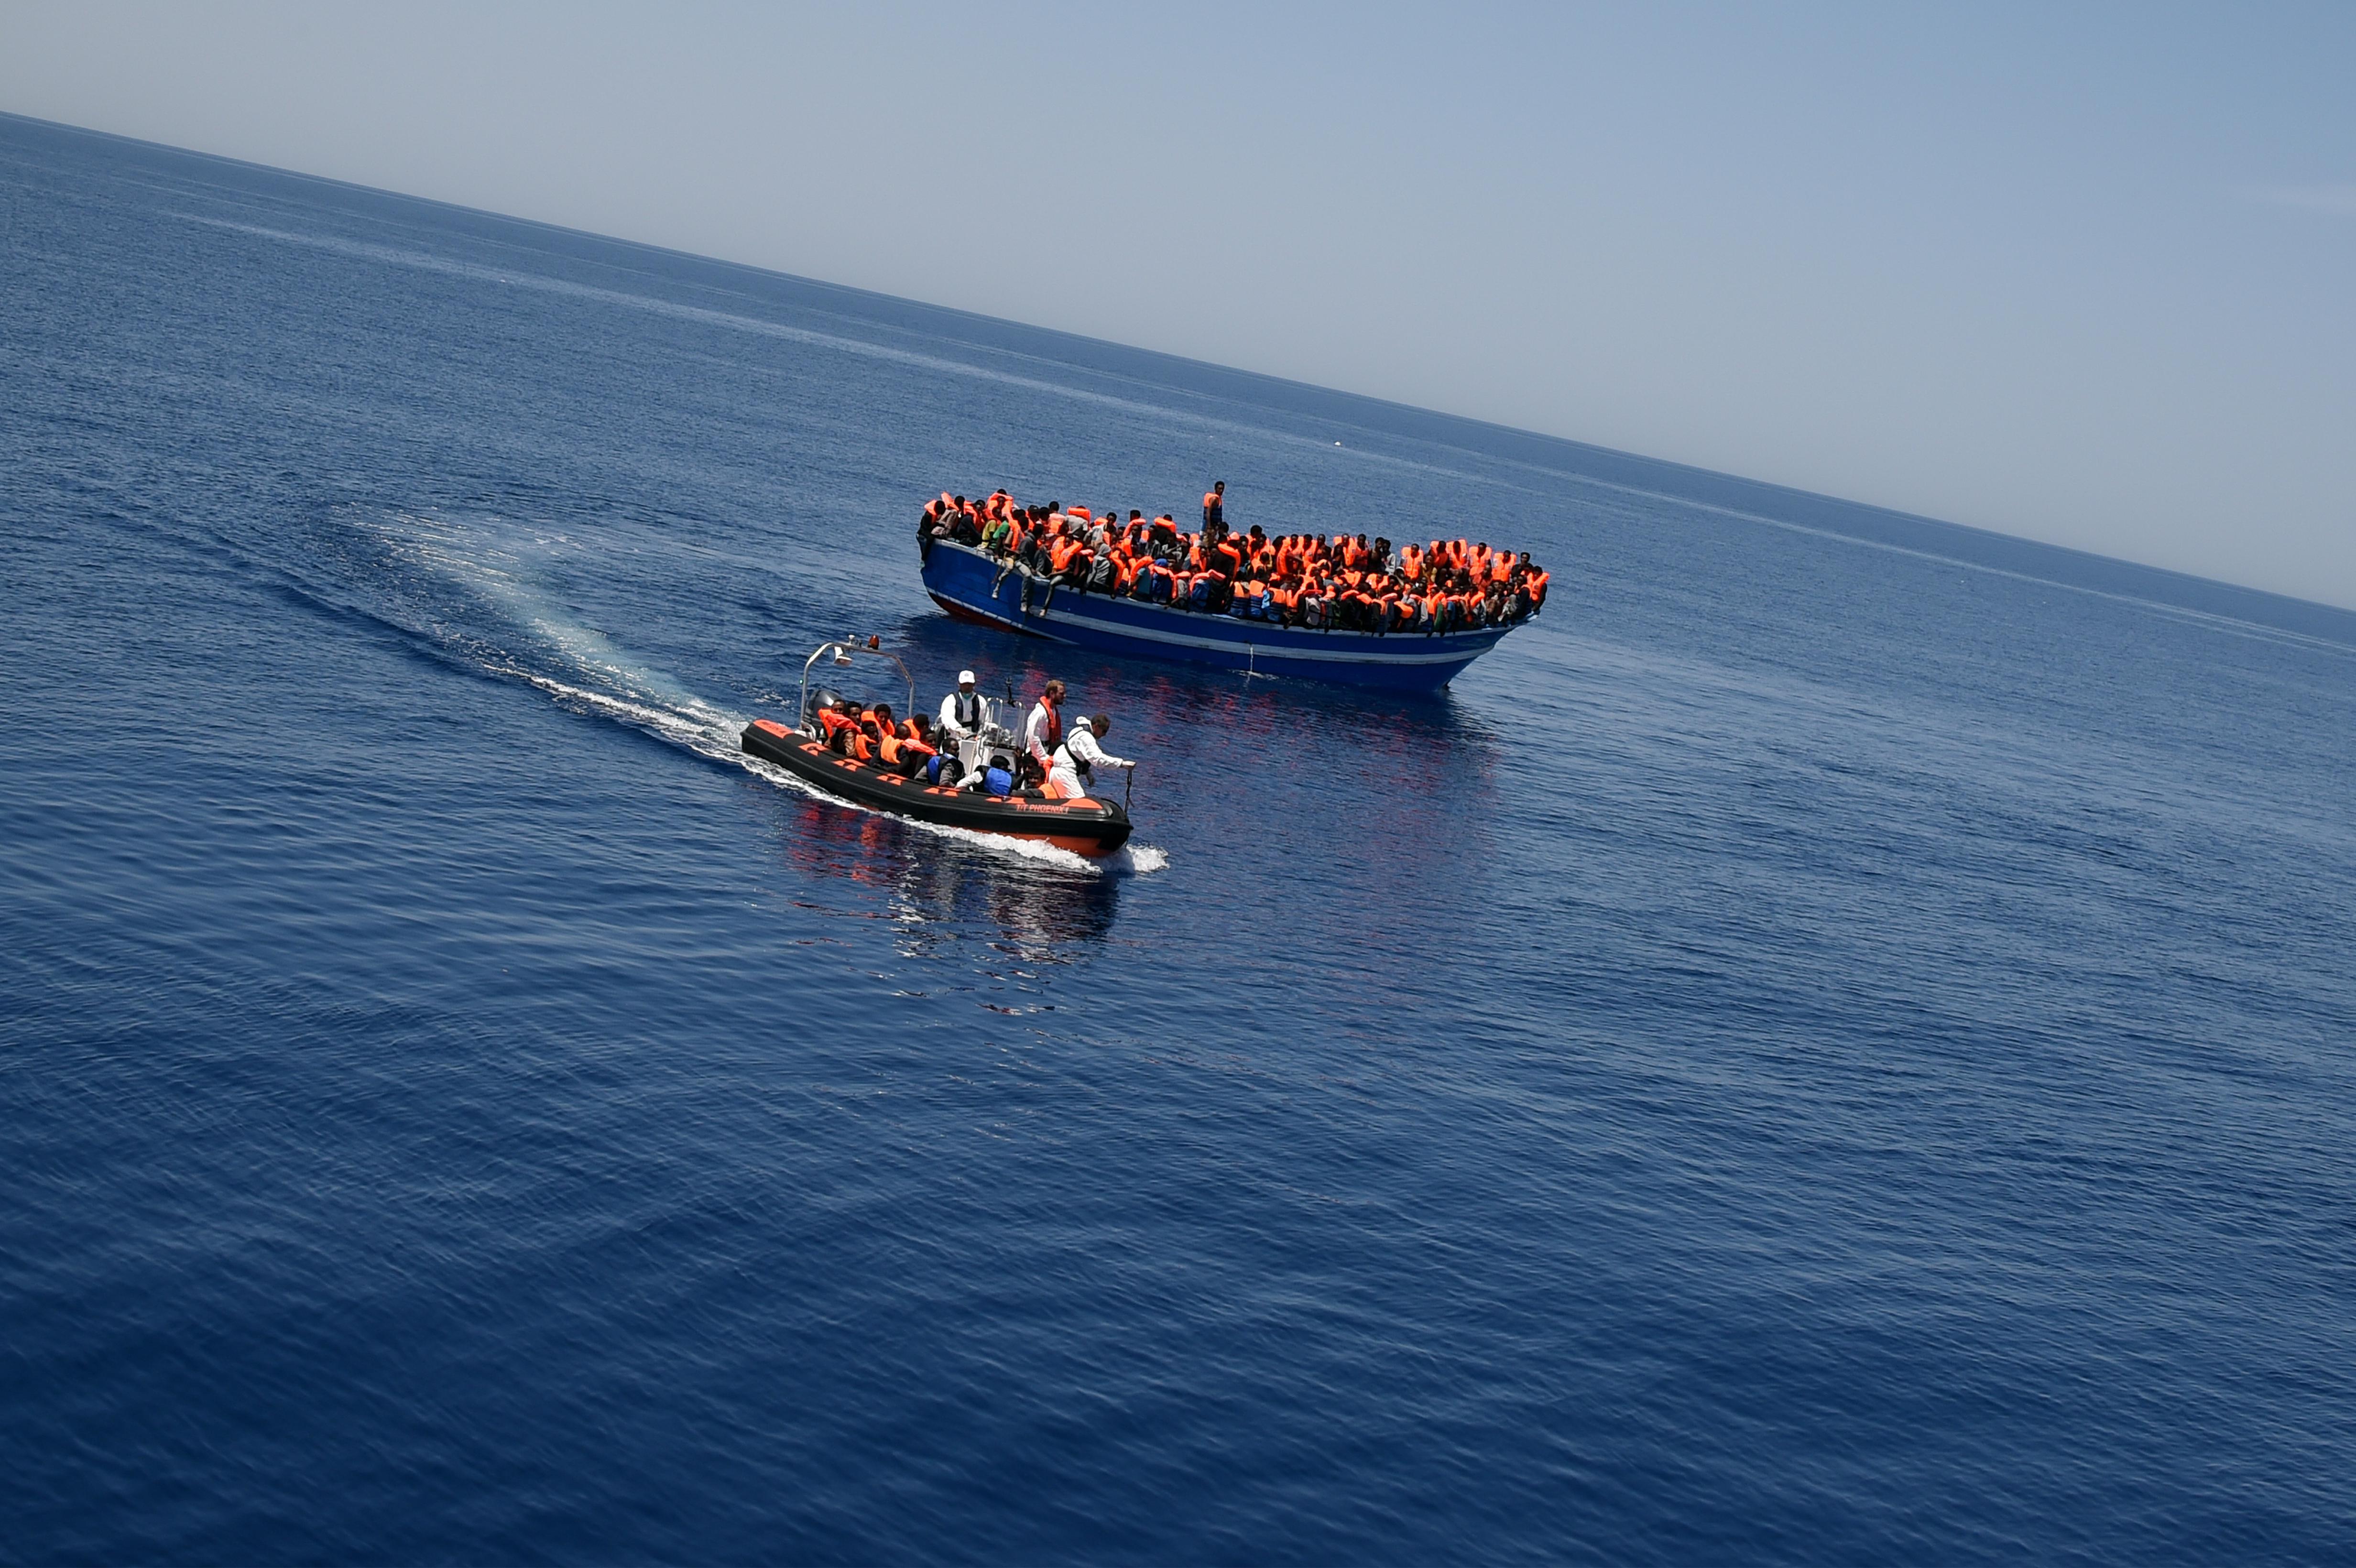 La squadra di soccorso di Msf e Moas assistite 369 persone in difficoltà su una imbarcazione di 12 metri nel mare Mediterraneo. (Foto di Ikram N'gadi)